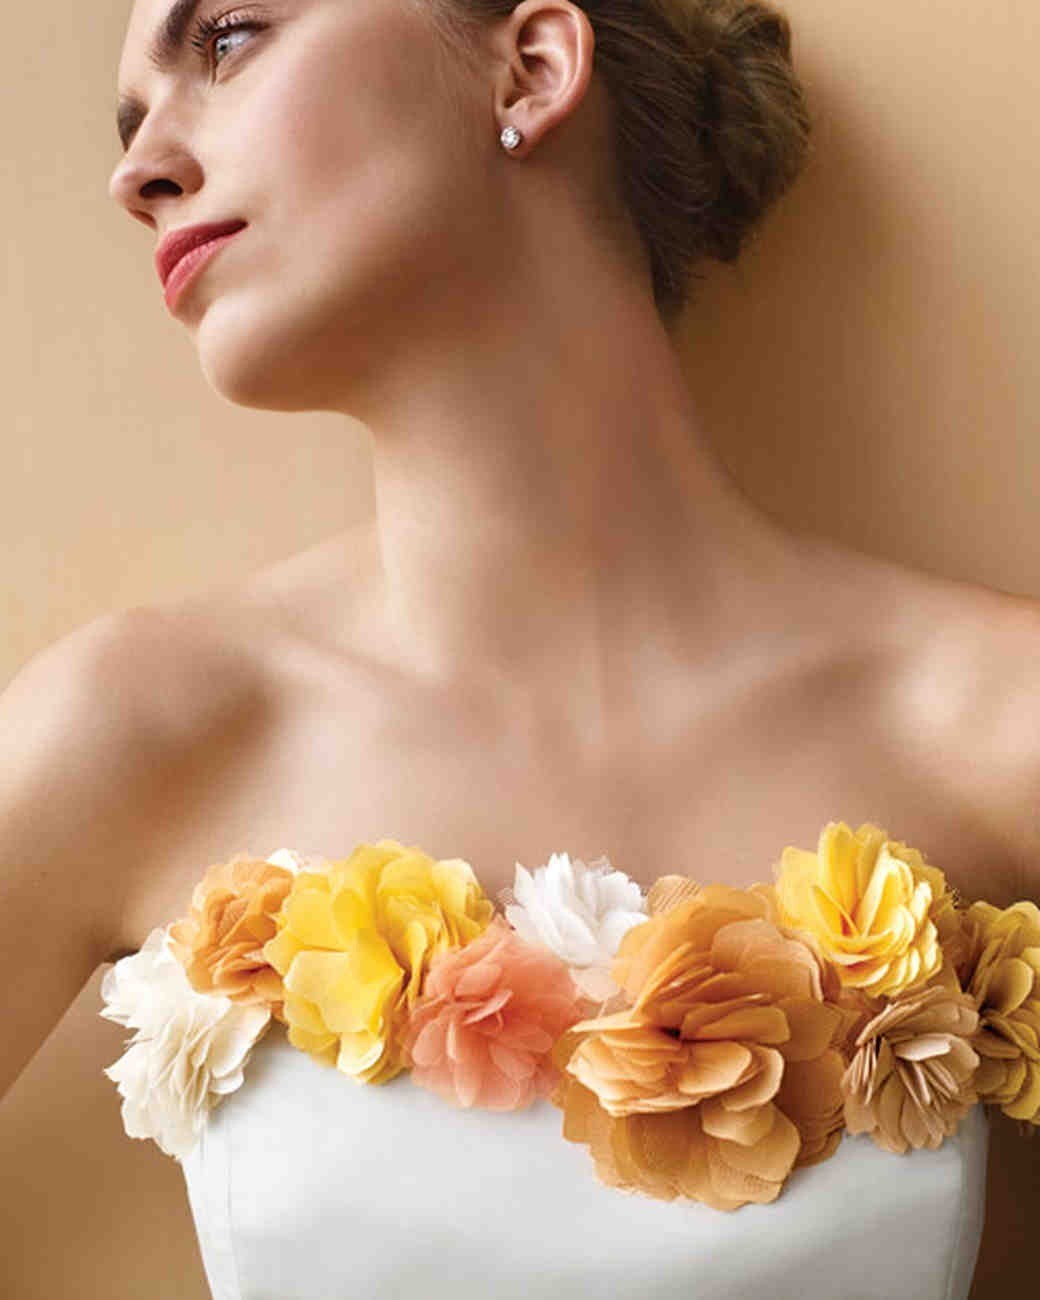 Цветы из ткани. Как можно красиво декорировать платье.: Мастер-Классы в журнале Ярмарки Мастеров